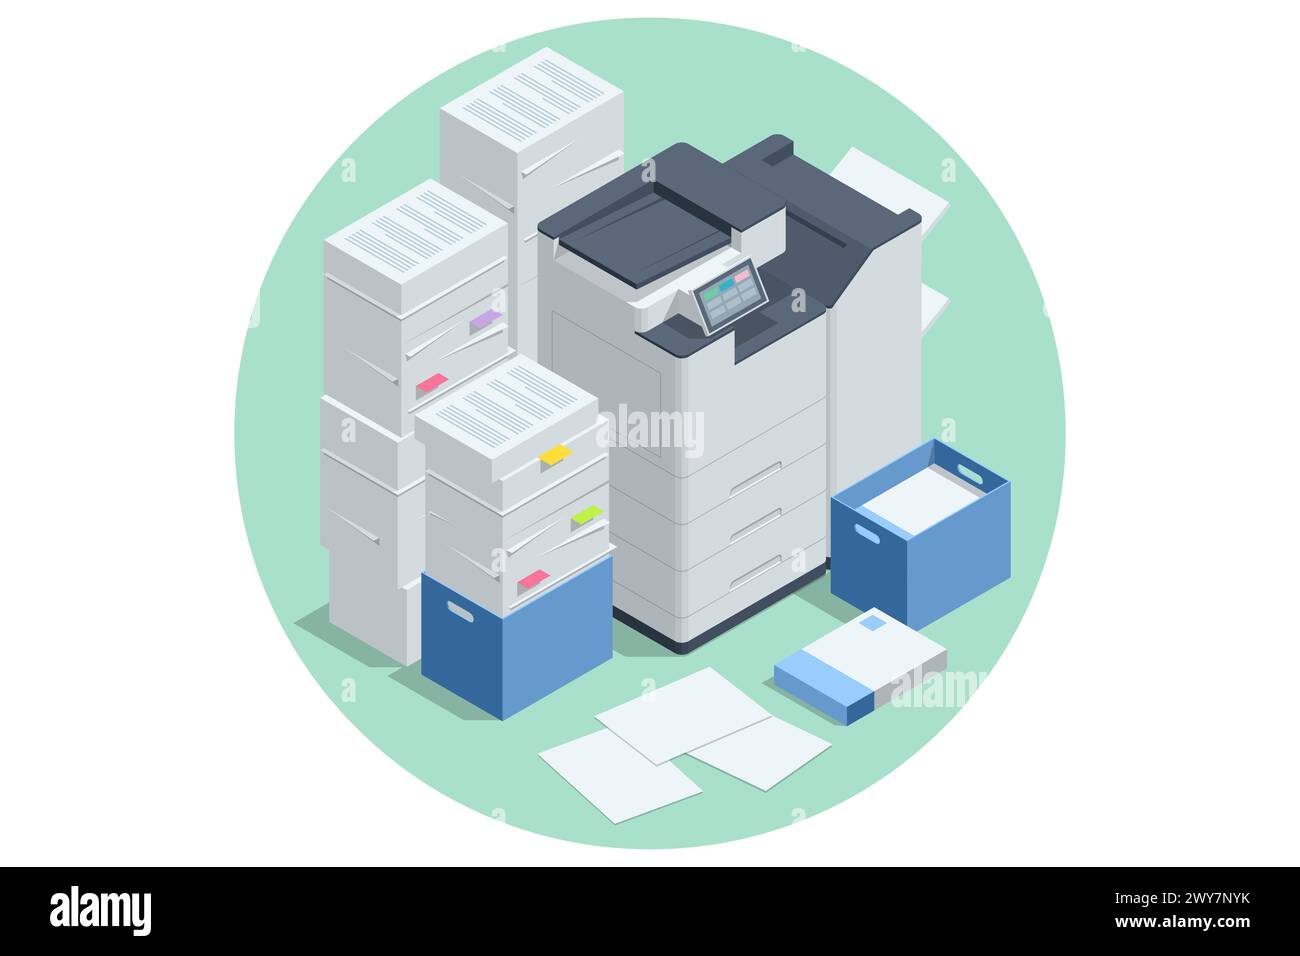 Scanner Isometric Office Multi-Function Printer. Stampa, copia, scansione, fax. Per documenti d'ufficio, presentazioni e materiale di marketing, con Enterprise Illustrazione Vettoriale